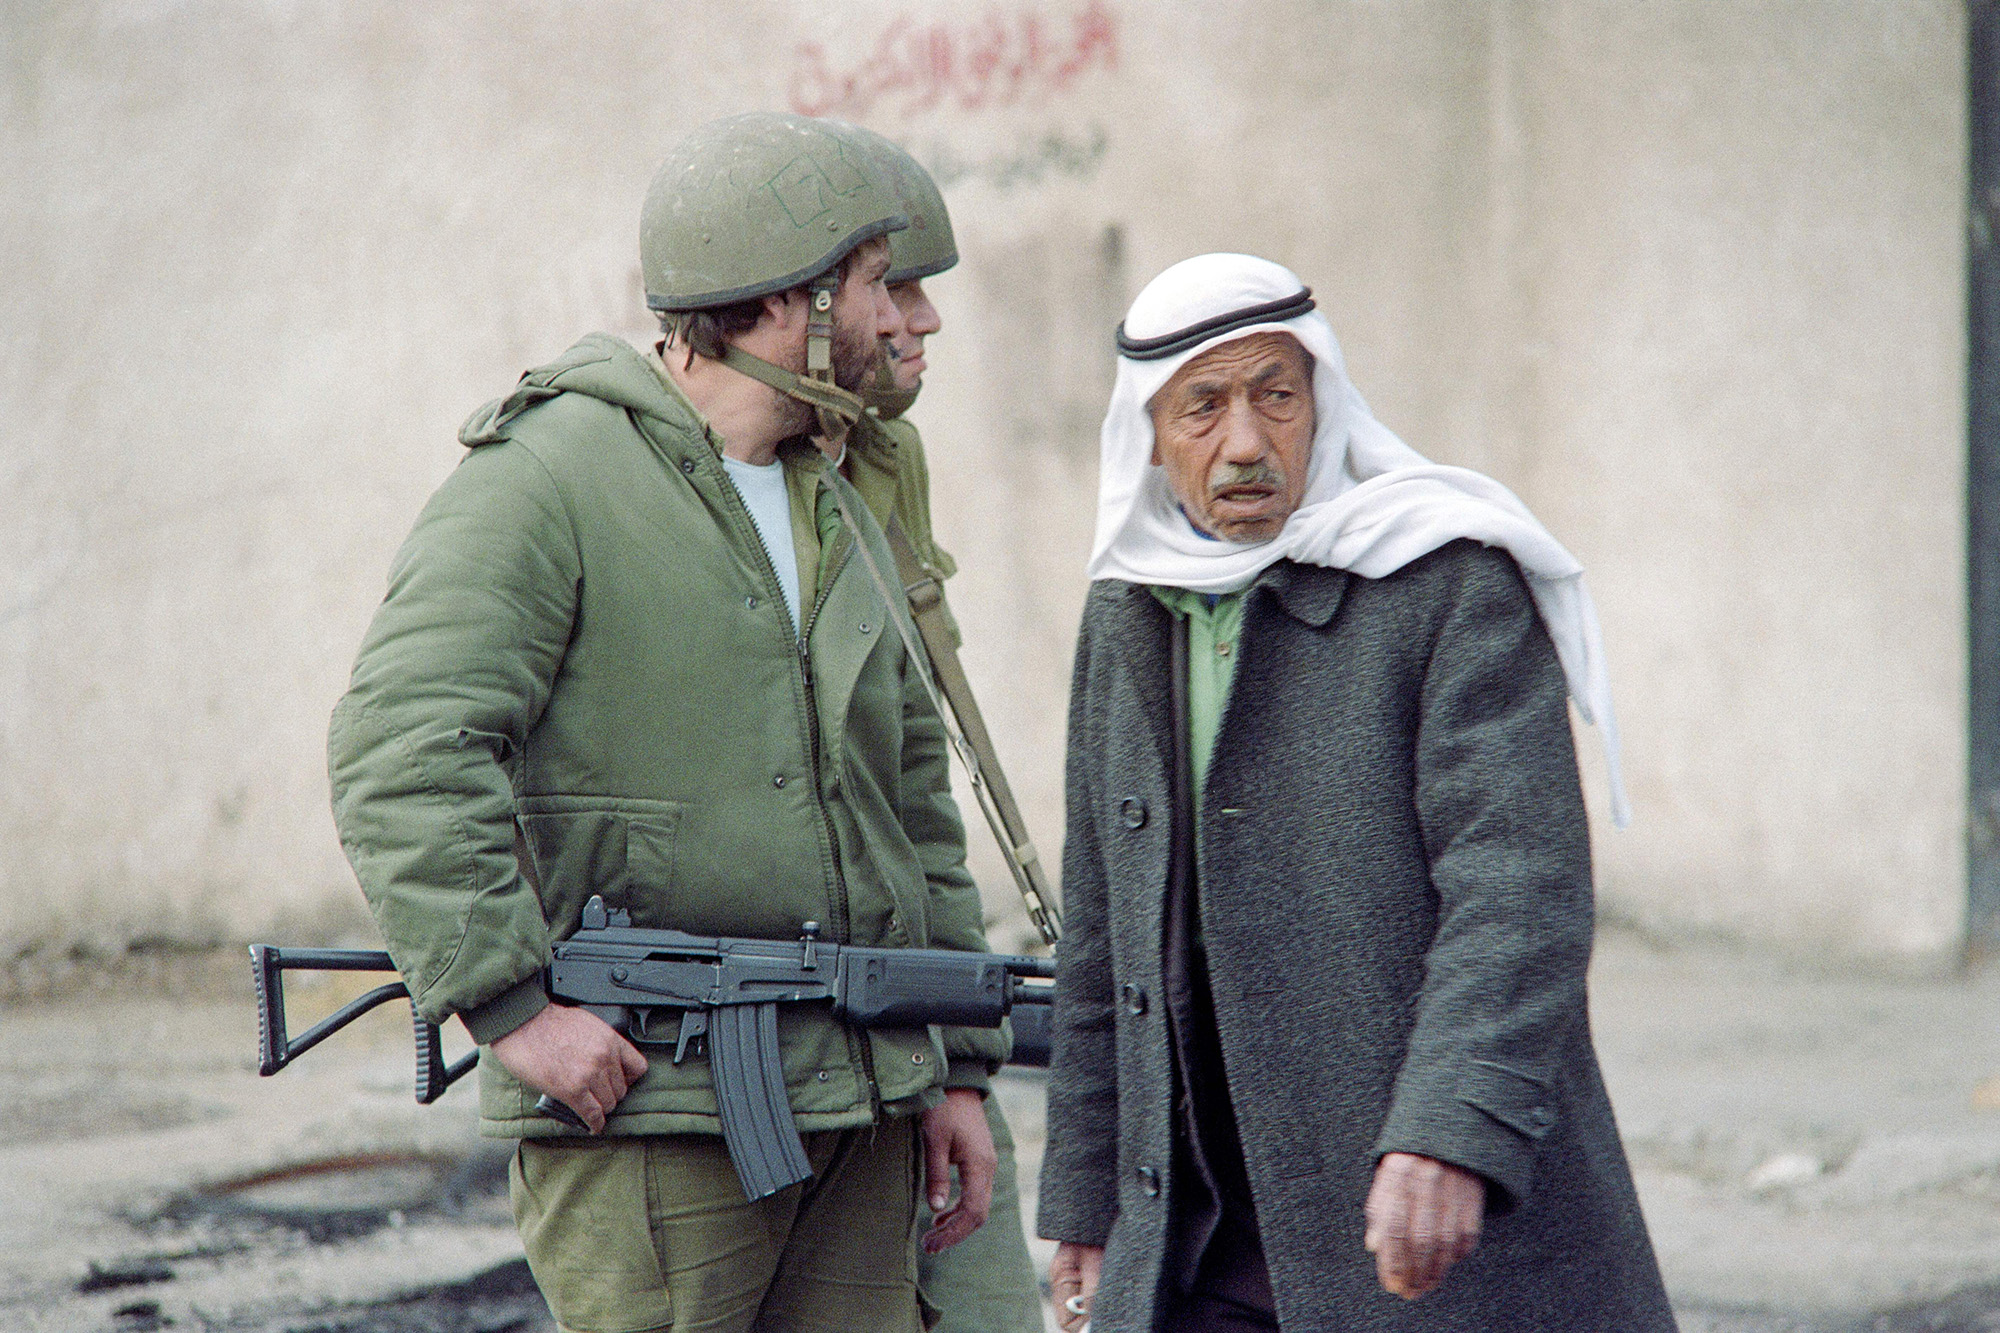 Un hombre palestino pasa junto a soldados israelíes que patrullan en una calle de Gaza el 20 de diciembre de 1987. (Esaias Baitel/AFP/Getty Images)